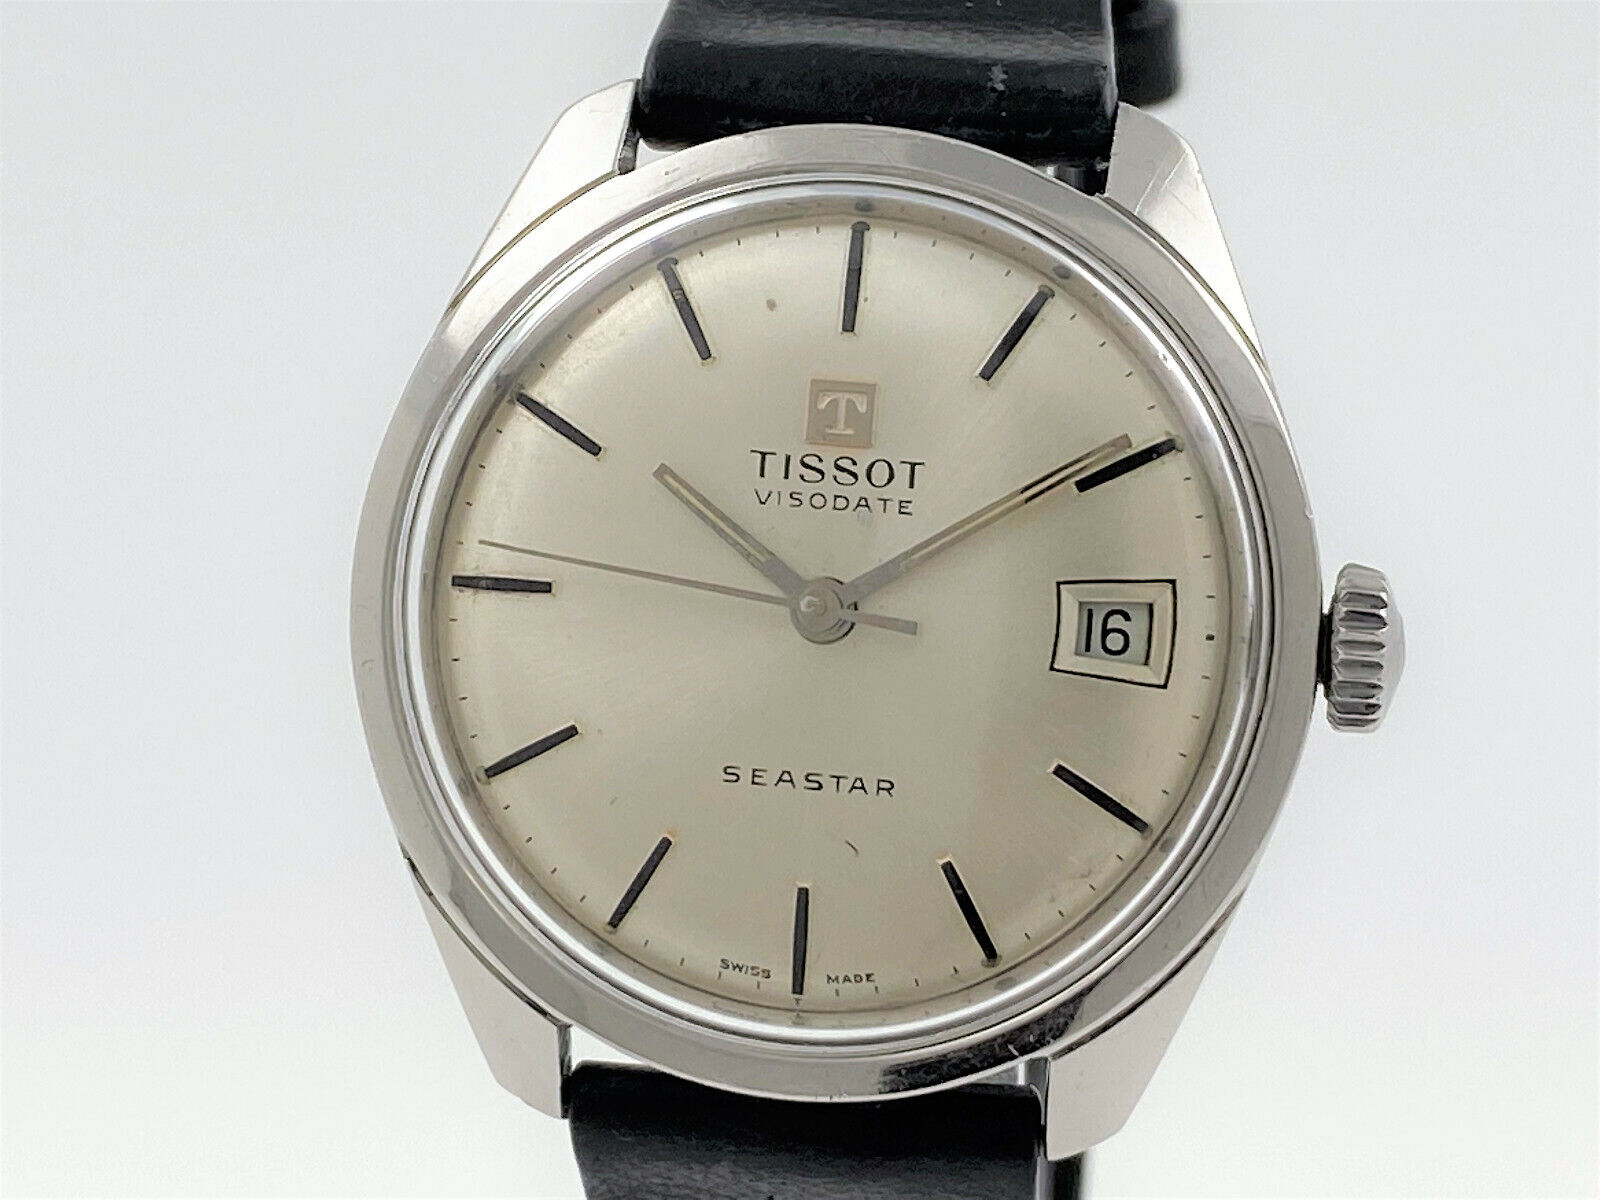 TISSOT Seastar Visodate Vintage Watch 41/42568-1 Cal. 782-1 (2878)